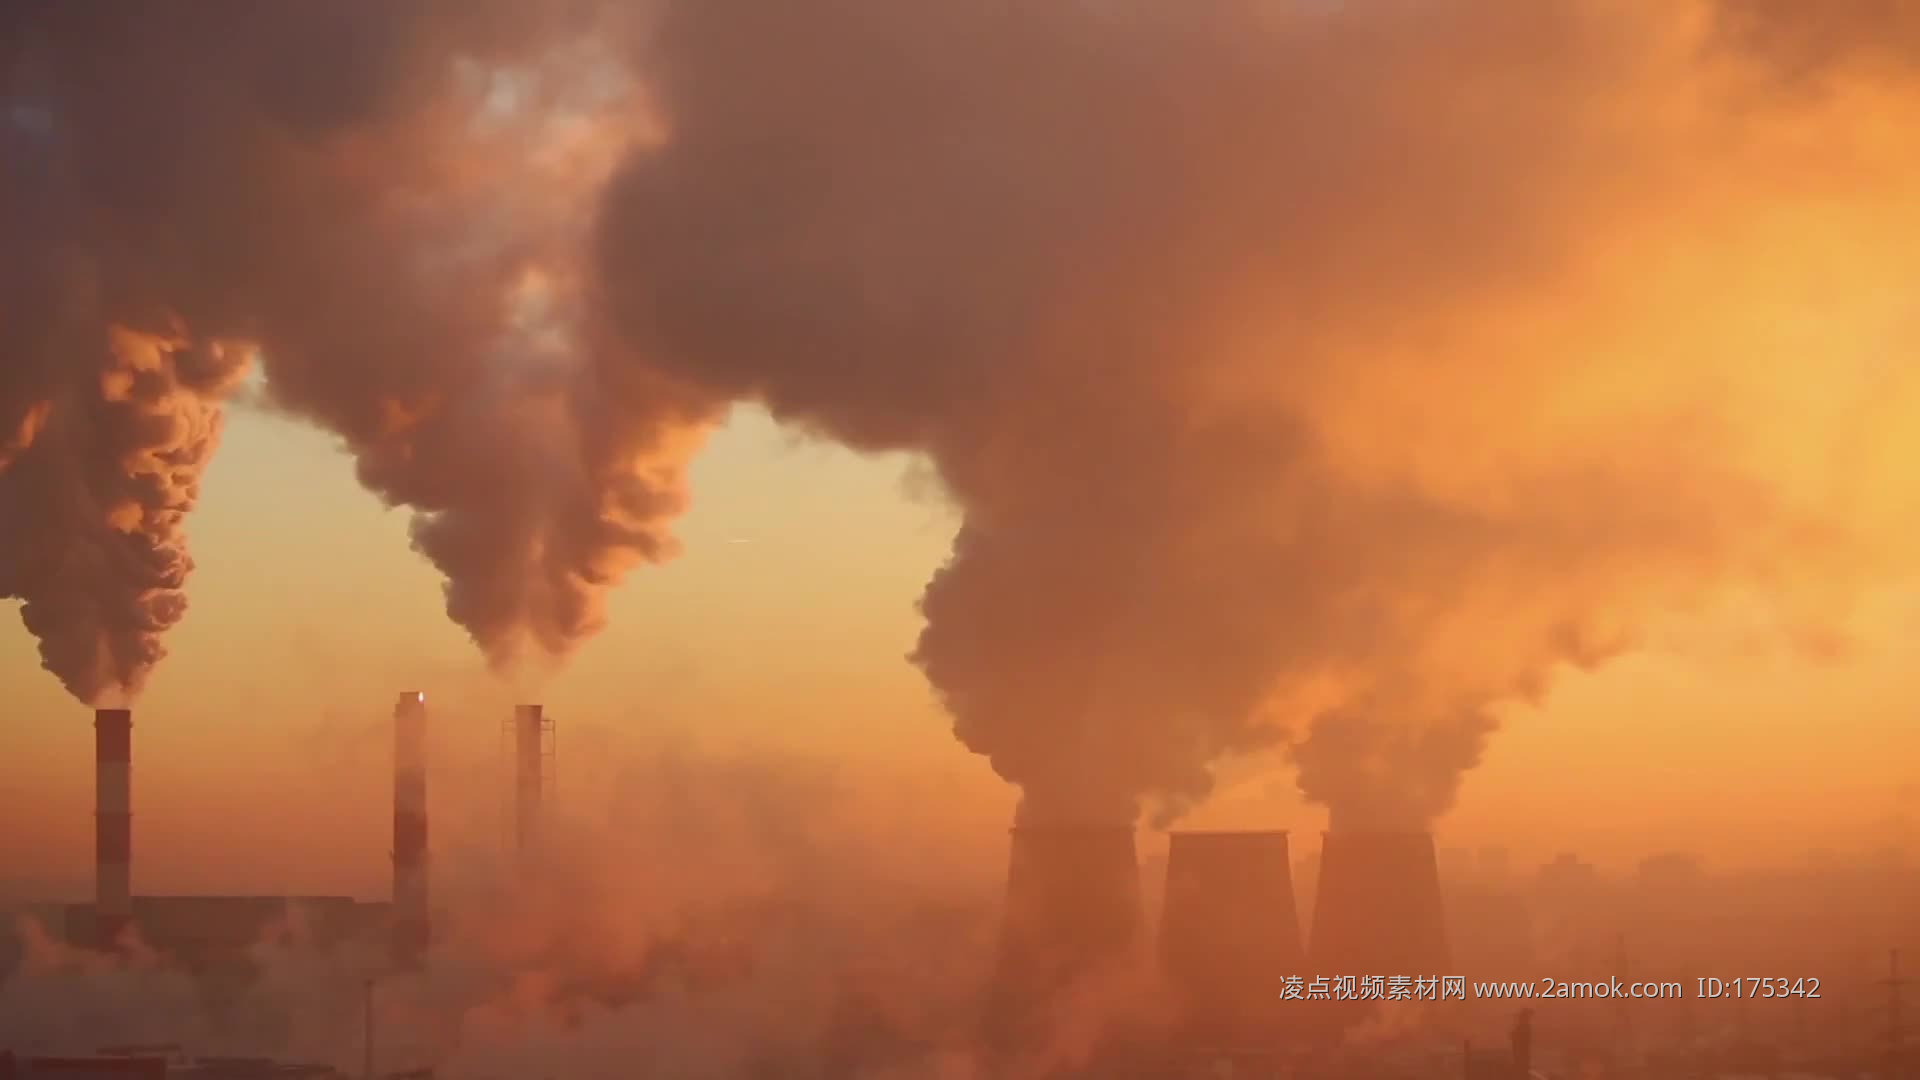 透过雾霾发现背后污染核心——卢广作品--中国摄影家协会网